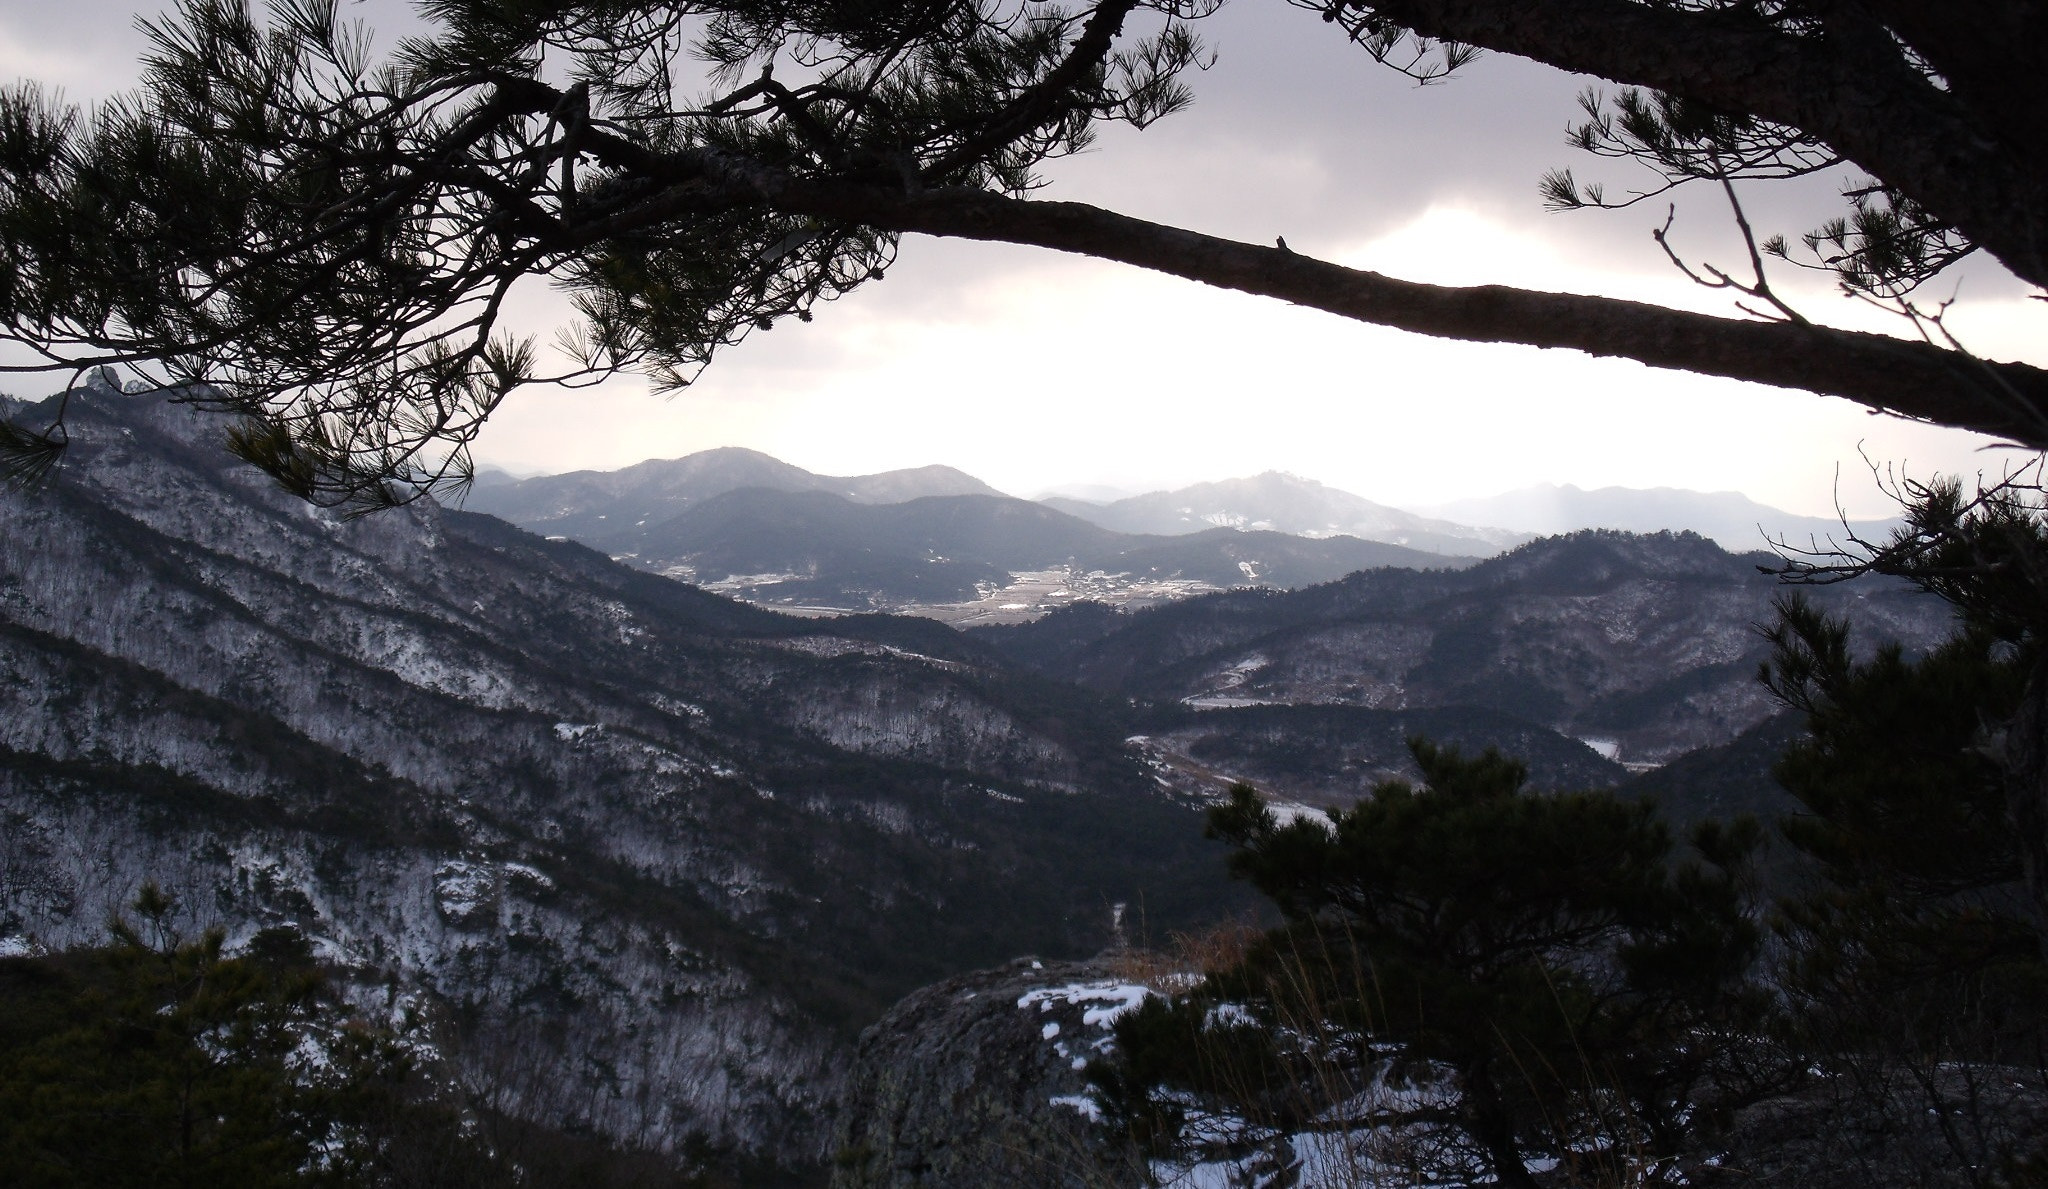 Fujifilm FinePix J110W sample photo. Seonun mountain in winter photography